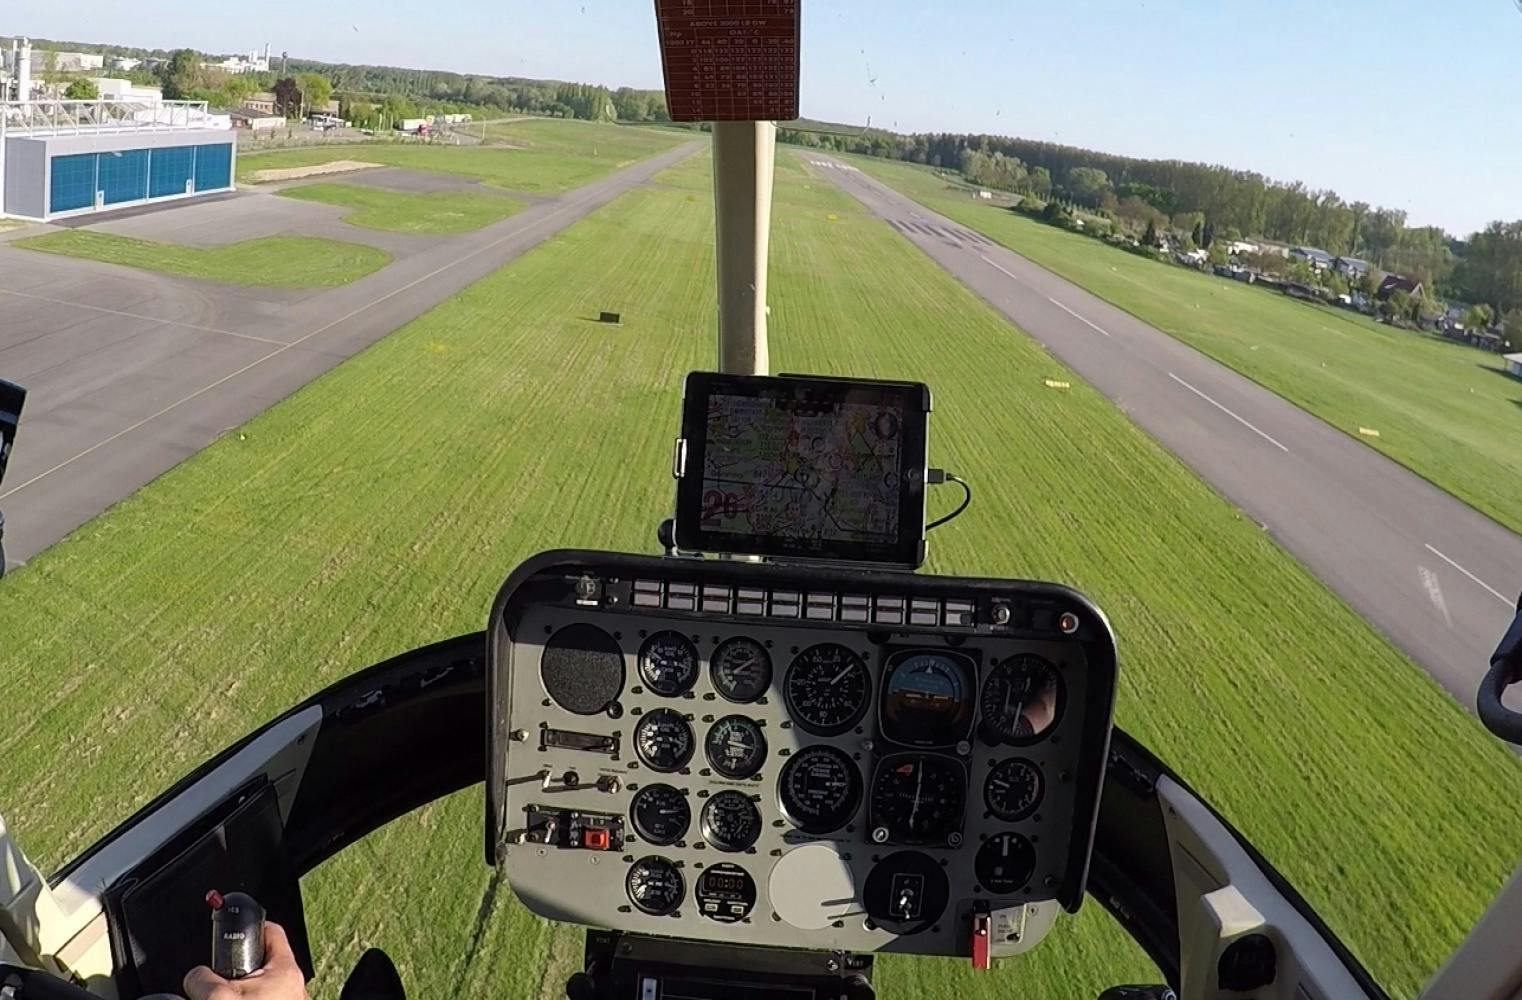 Rundflug mit Hubschrauber | ca. 30 Min. Sightseeing von oben